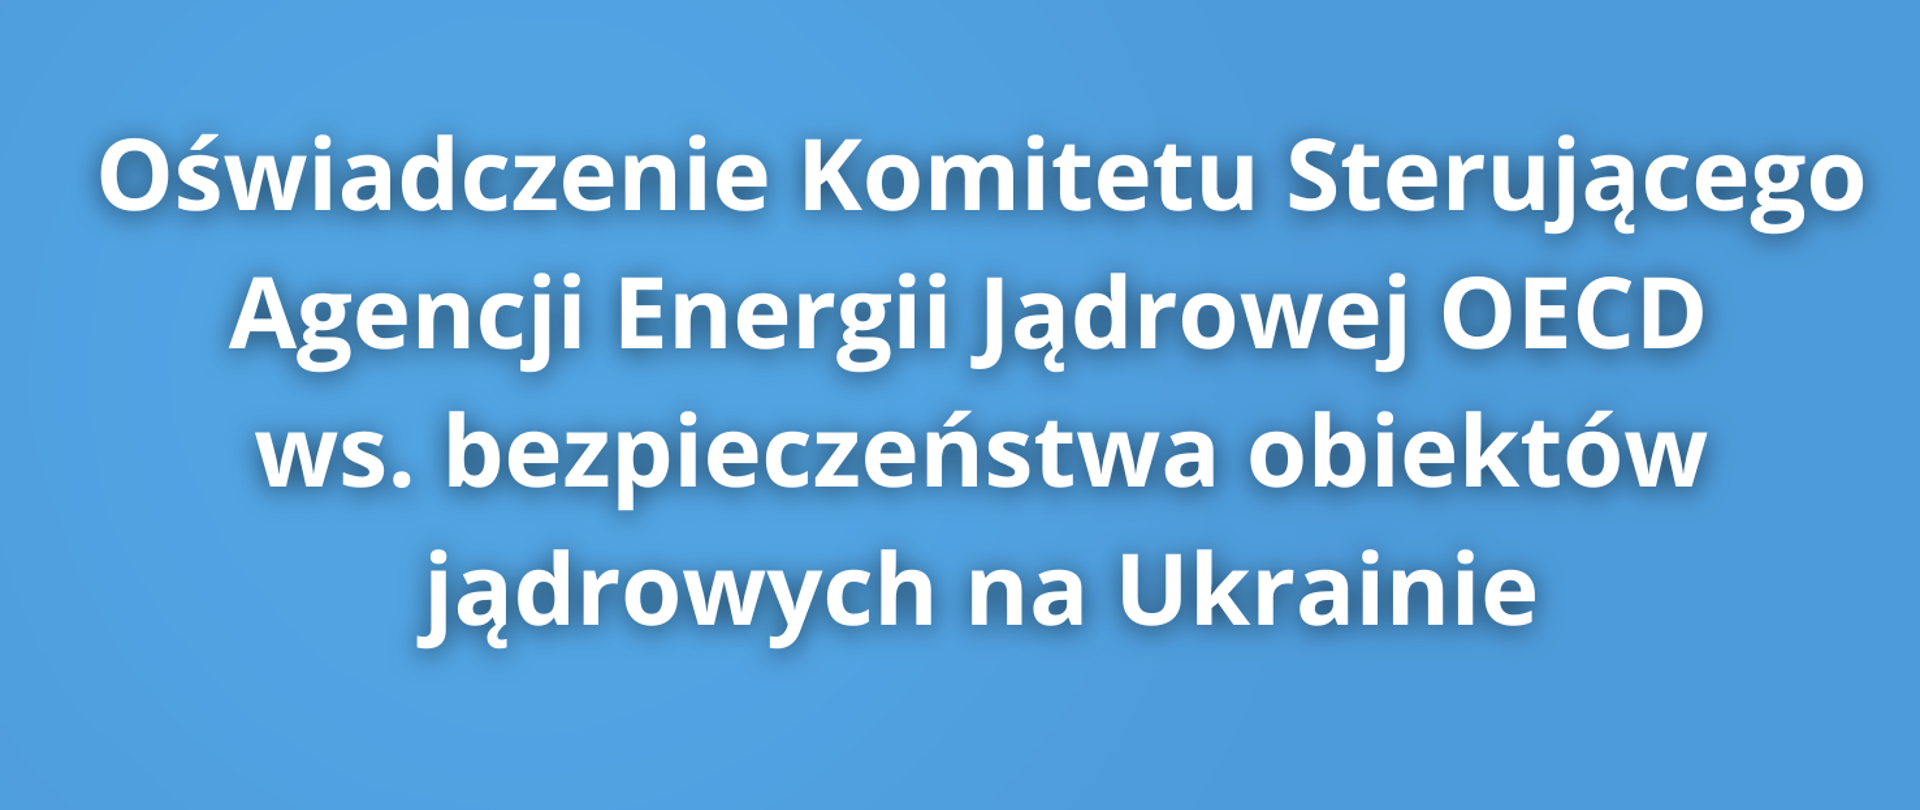 Oświadczenie Komitetu Sterującego Agencji Energii Jądrowej OECD ws. bezpieczeństwa obiektów jądrowych na Ukrainie